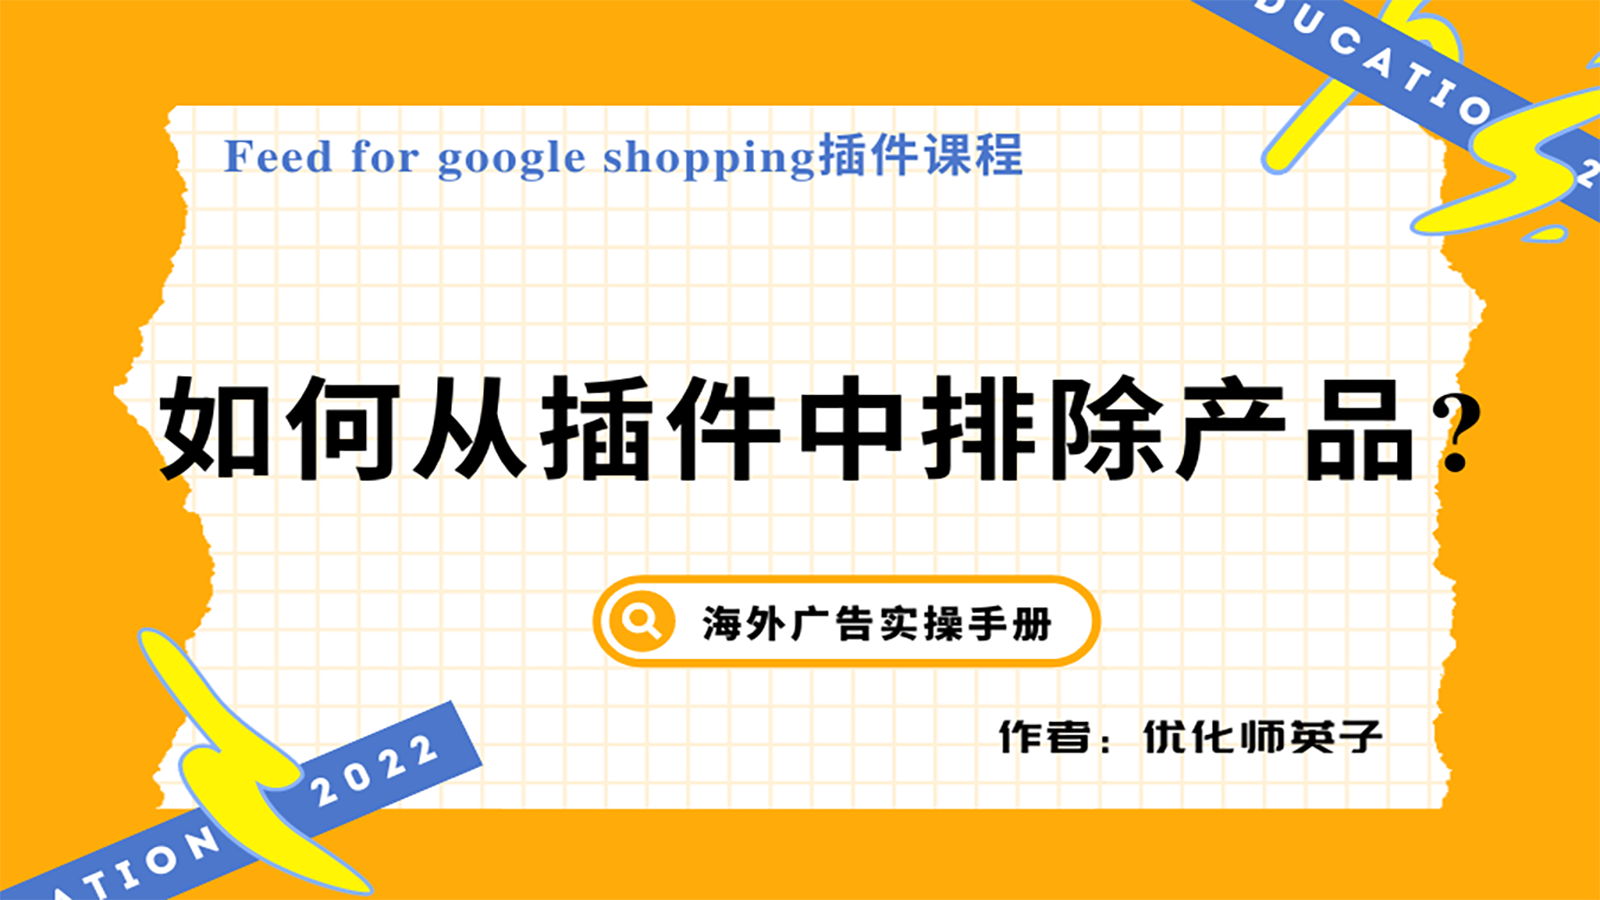 【Feed for google shopping插件】第4节：如何从插件中排除产品